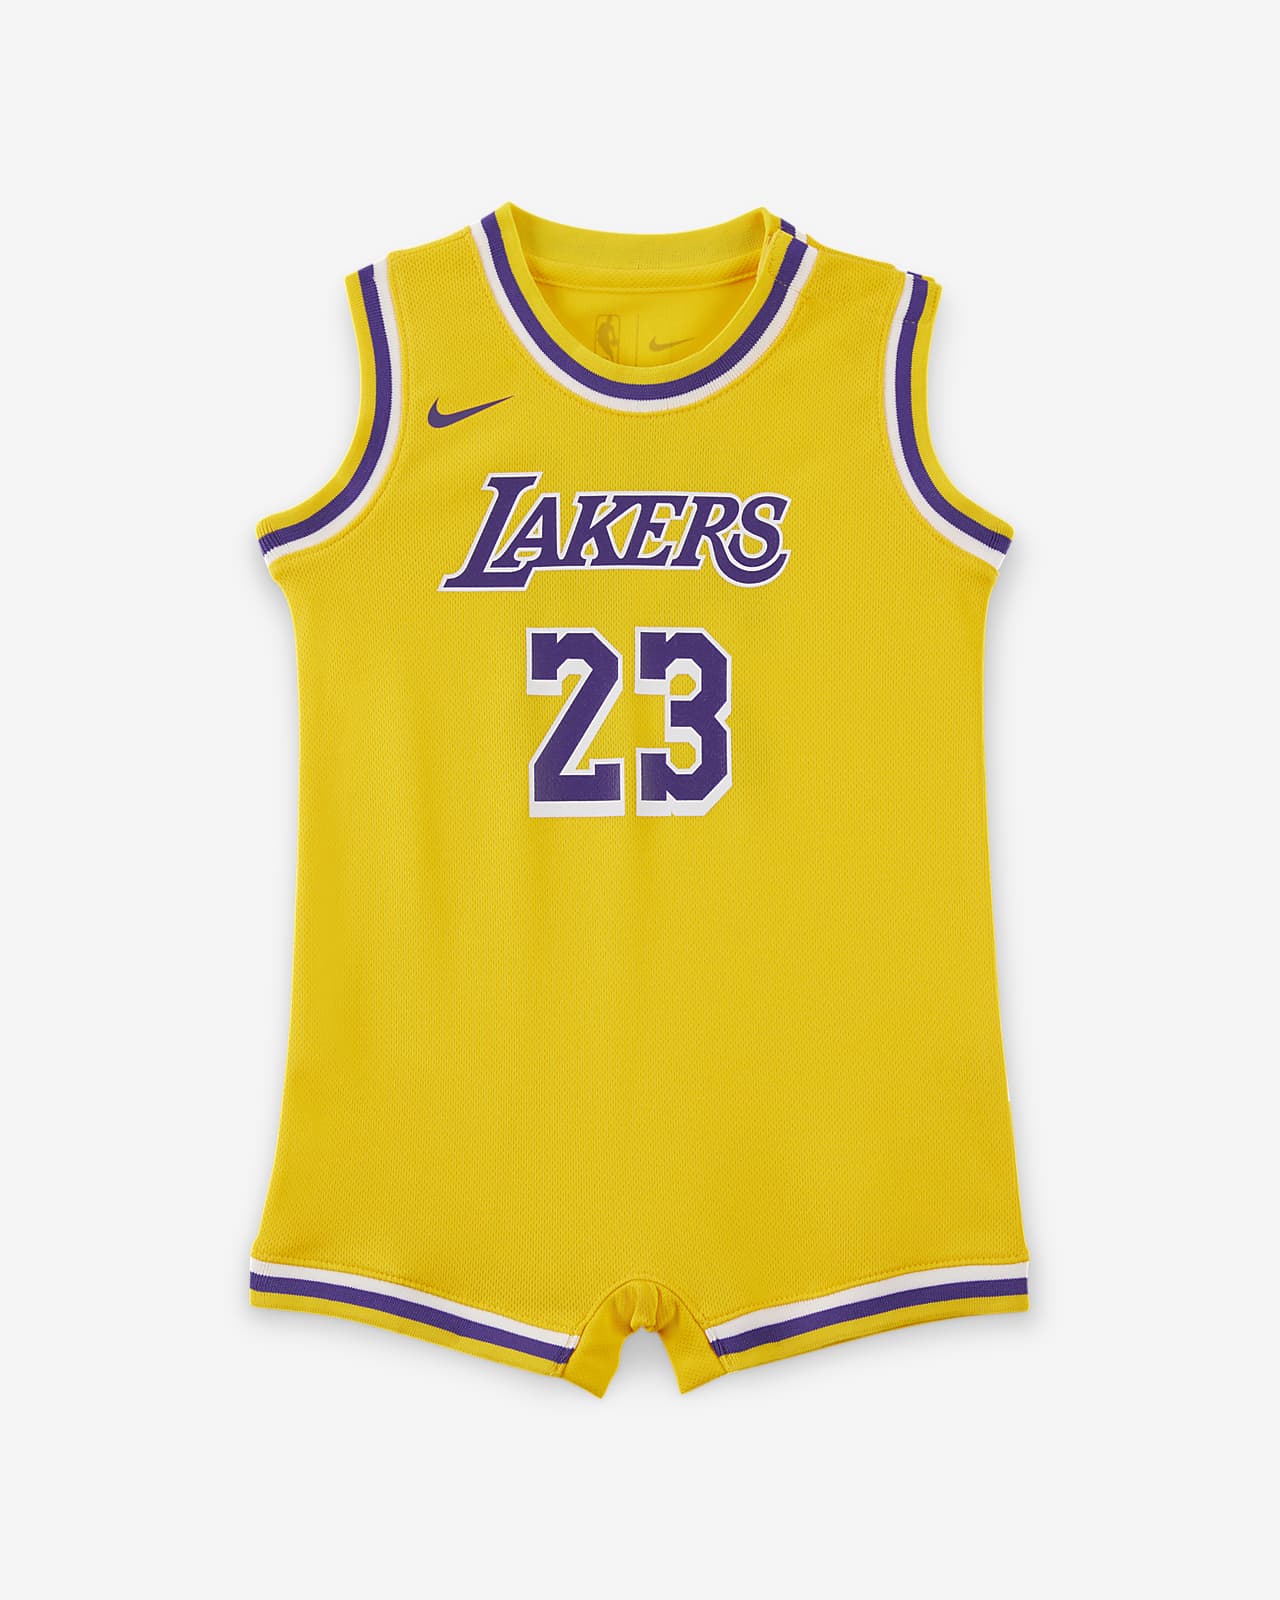 洛杉矶湖人队 (LeBron James) Nike NBA 婴童连体衣